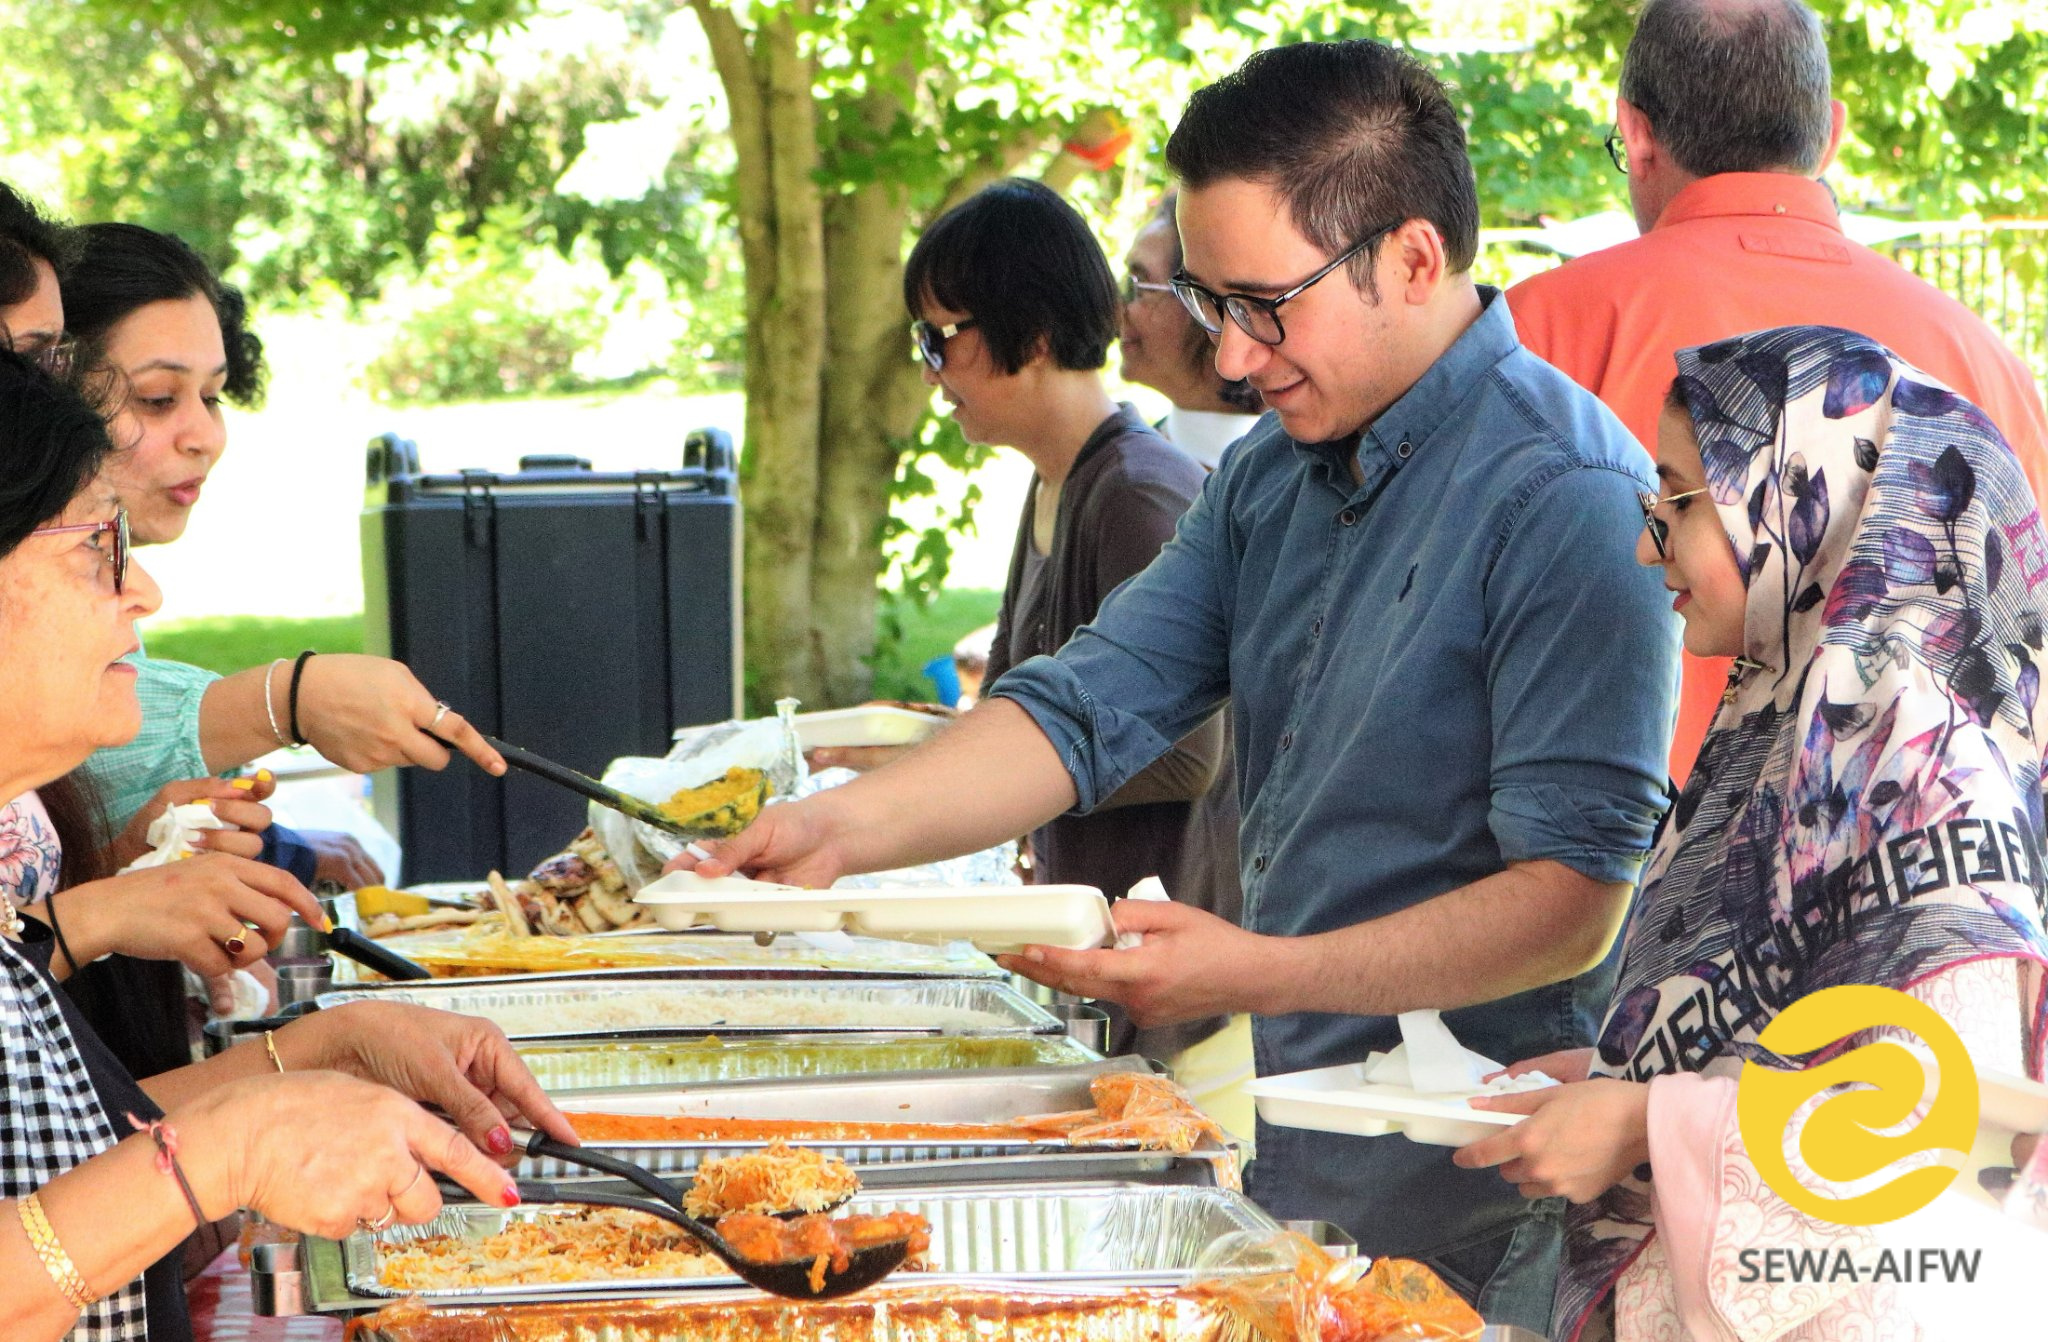 Guests dish up food at a SEWA event